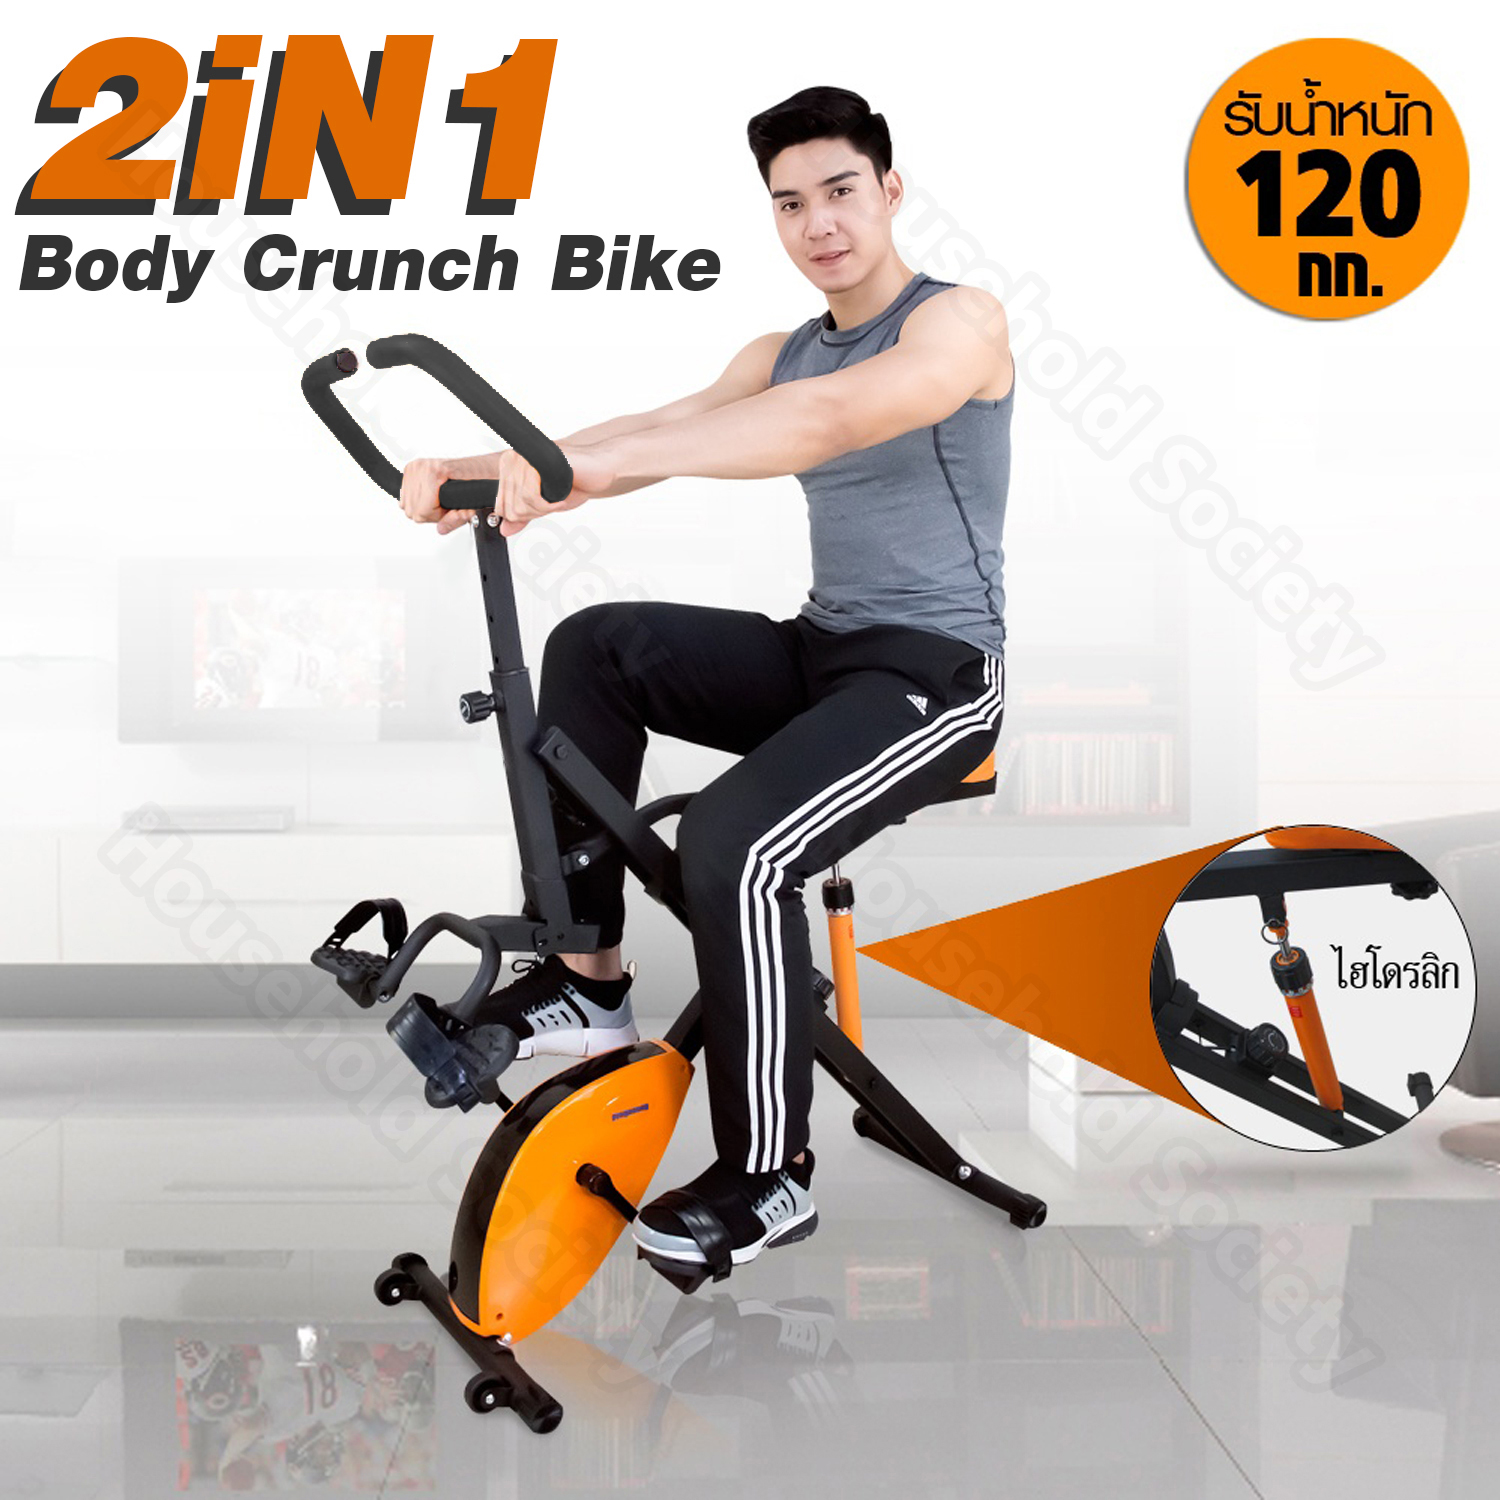 จักรยานออกกำลังกาย จักรยานออกกาย เครื่องออกกำลังกาย ออกกำลังกาย ระบบคอมพาวด์ 2in1  สควอช   Body Crunch Bike